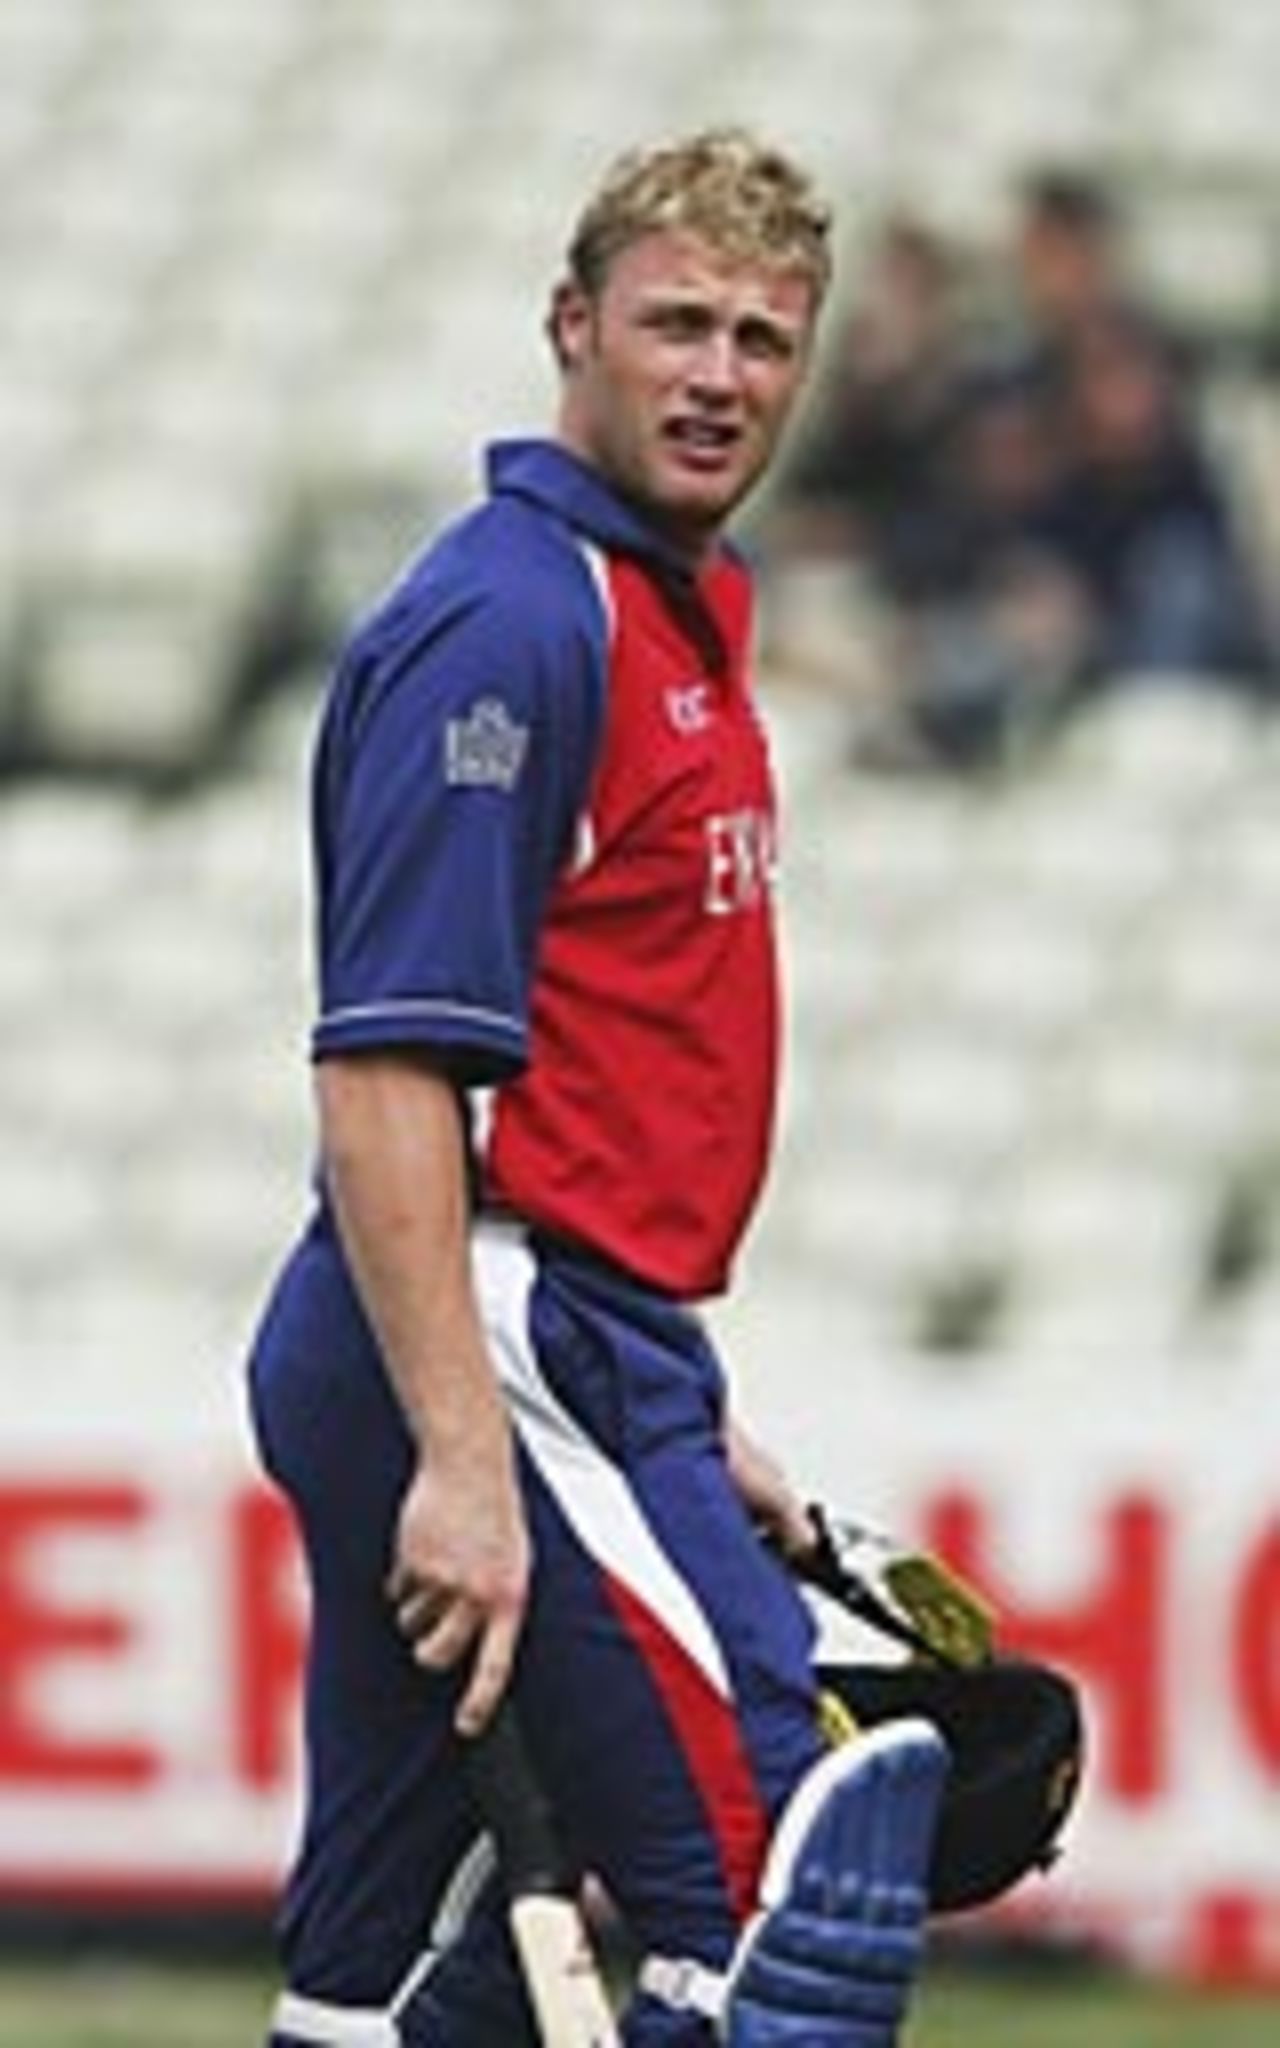 Andrew Flintoff trudges off after being dismissed, Australia v England, Champions Trophy, Edgbaston, September 21, 2004